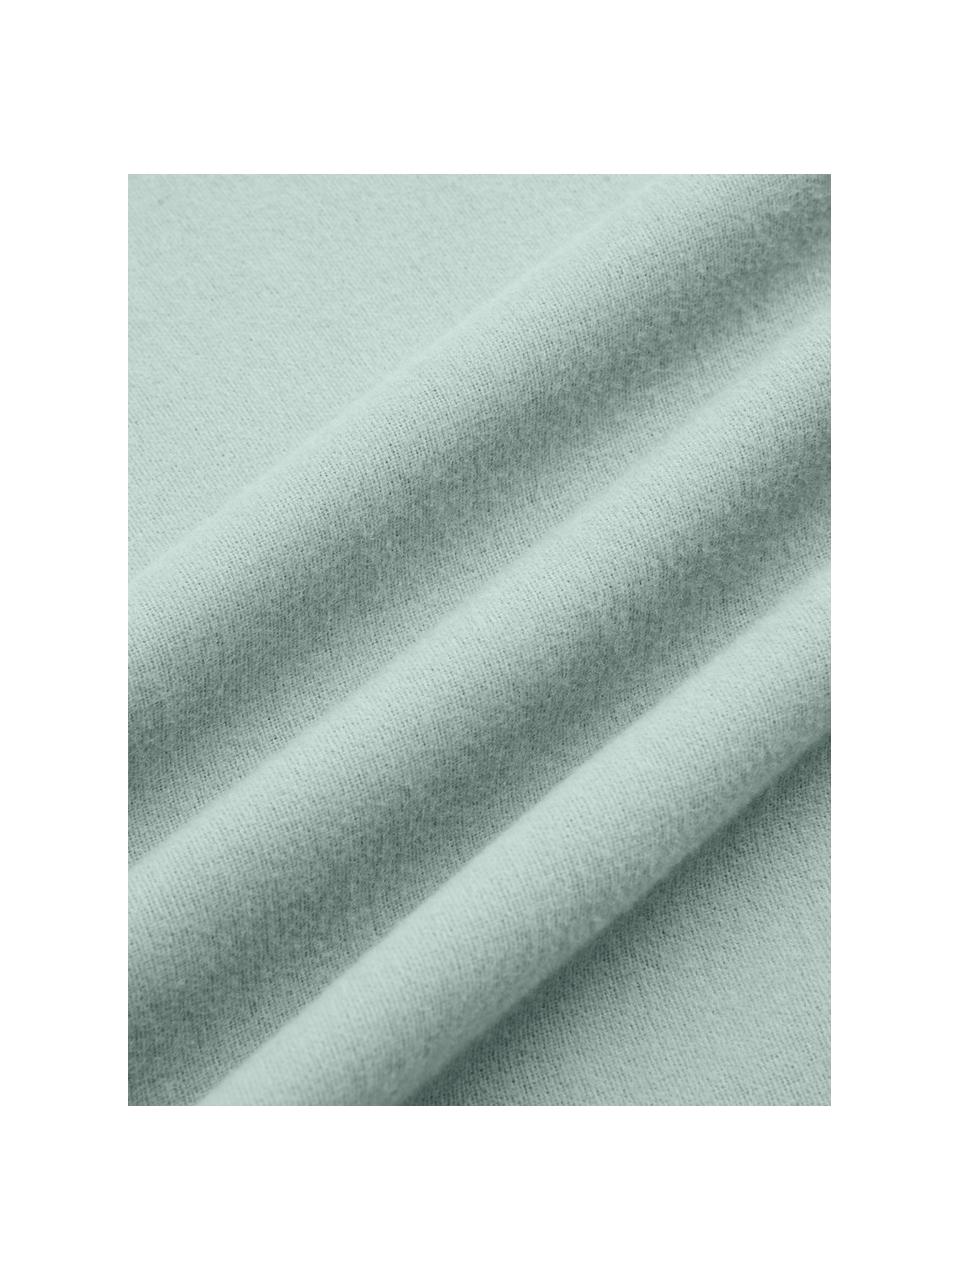 Flanell-Kissenbezüge Biba in Salbeigrün, 2 Stück, Webart: Flanell Flanell ist ein k, Salbeigrün, B 40 x L 80 cm